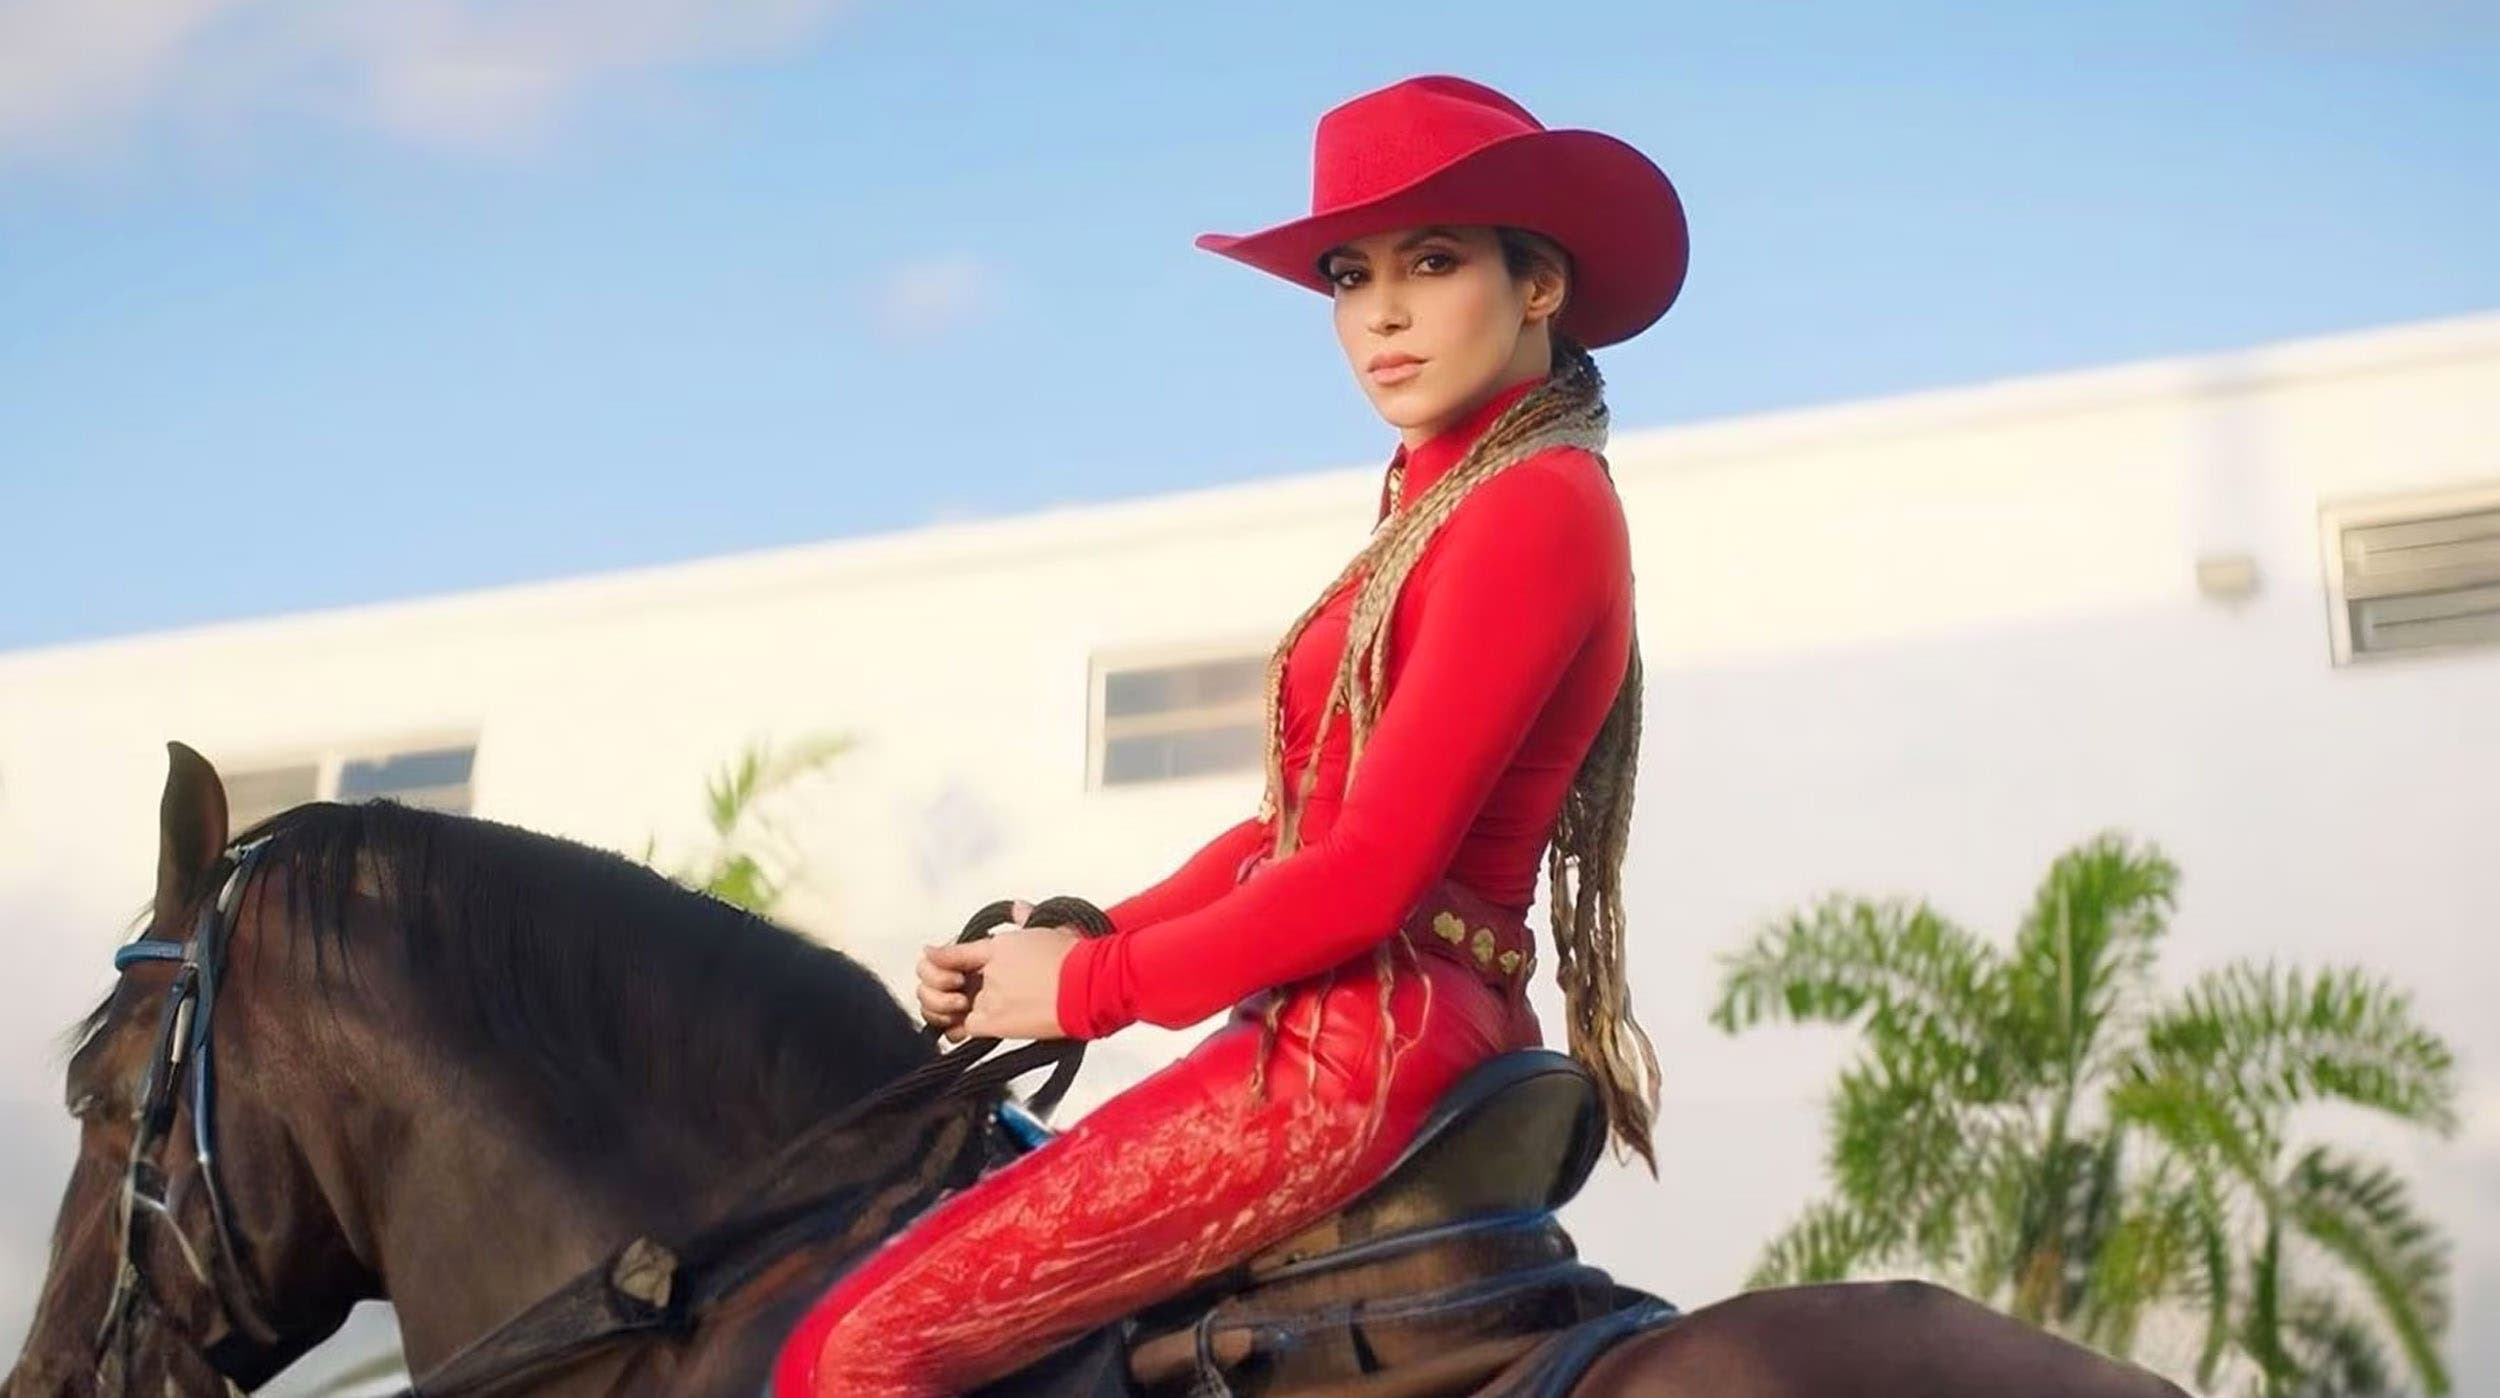 Incursiona Shakira en la música regional mexicana con “El Jefe” junto con Fuerza Regida